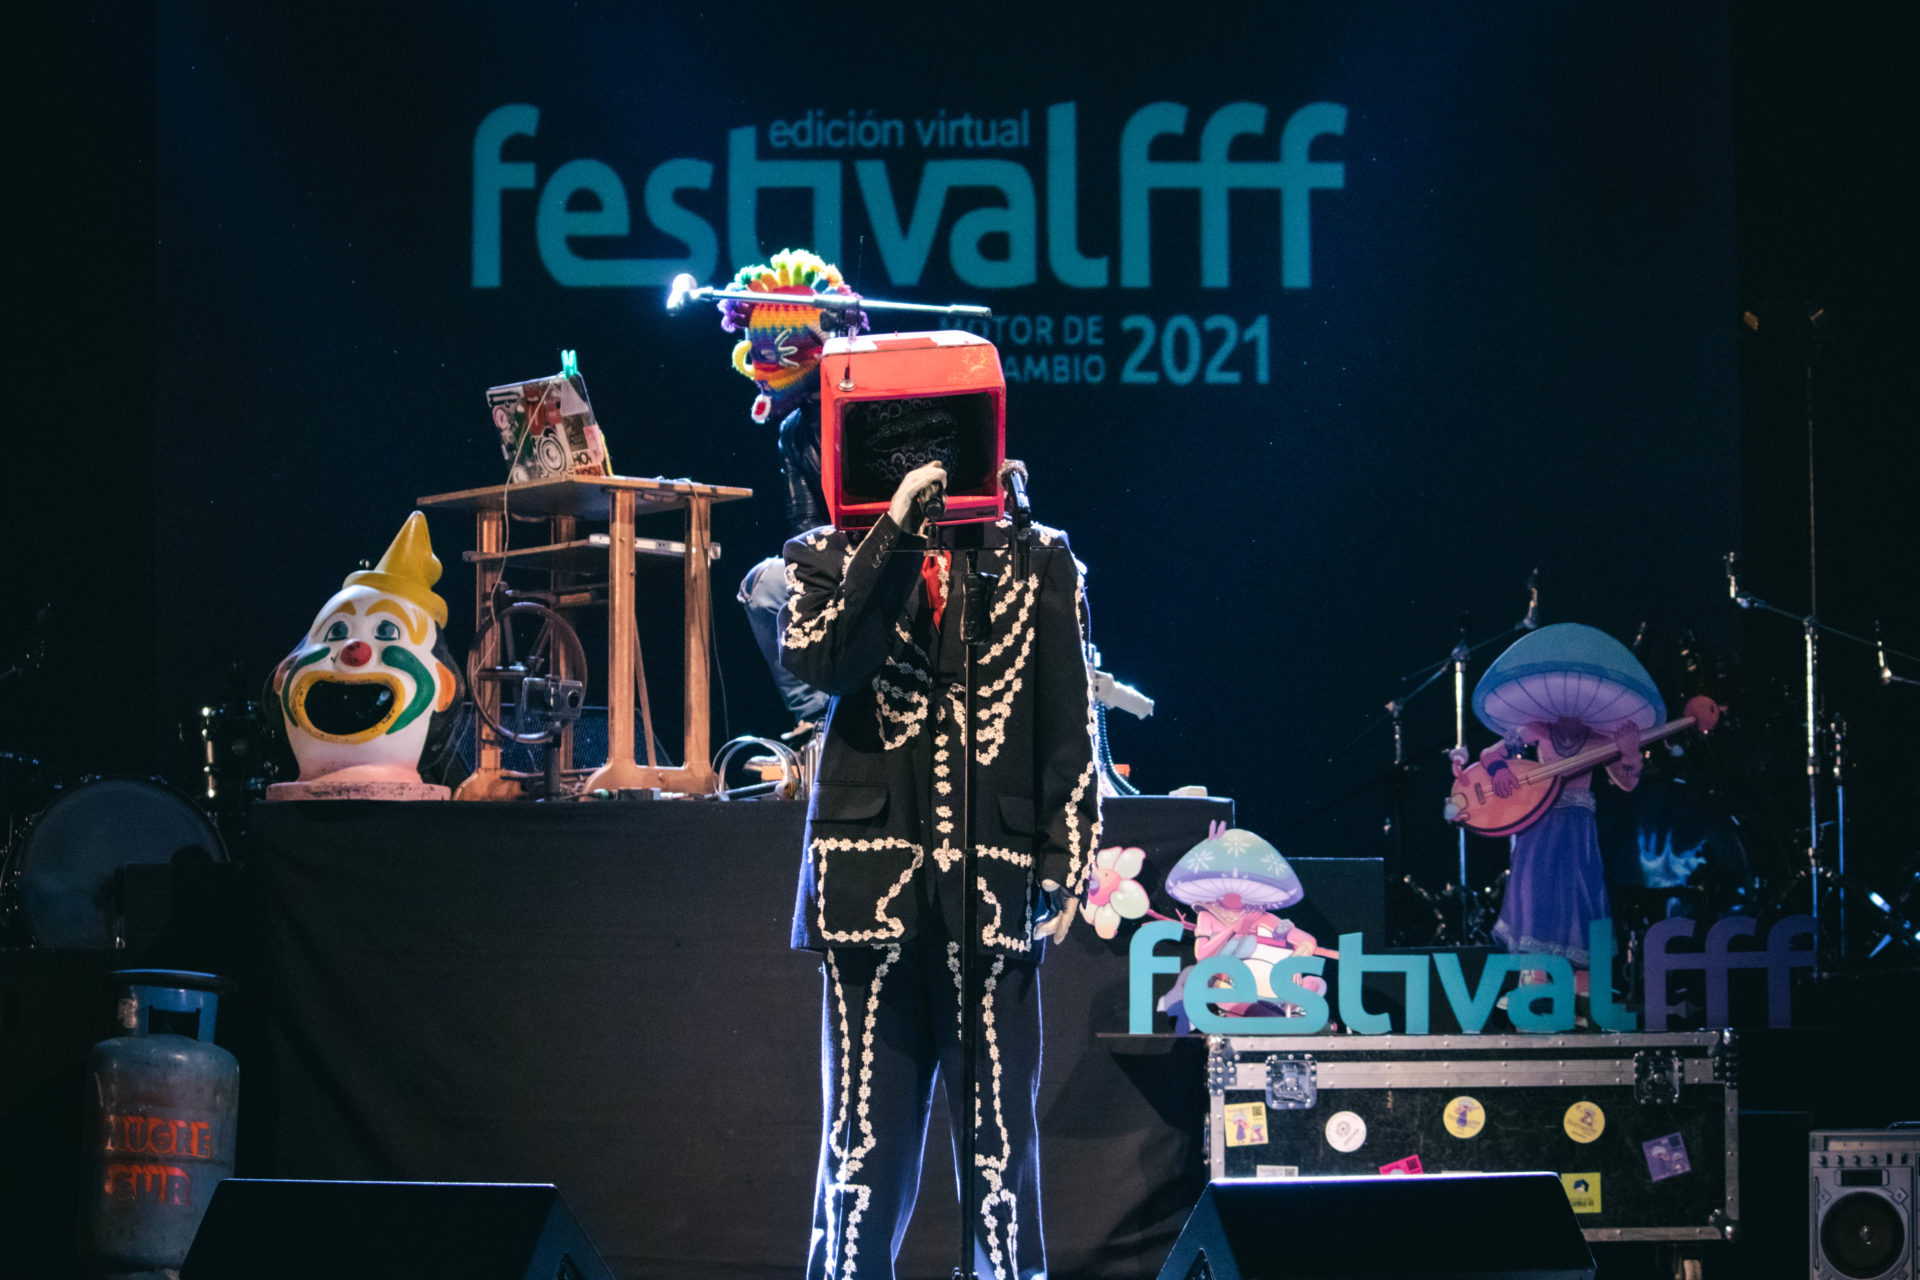 FestivalFFF 2021, diecisiete años de música de vanguardia